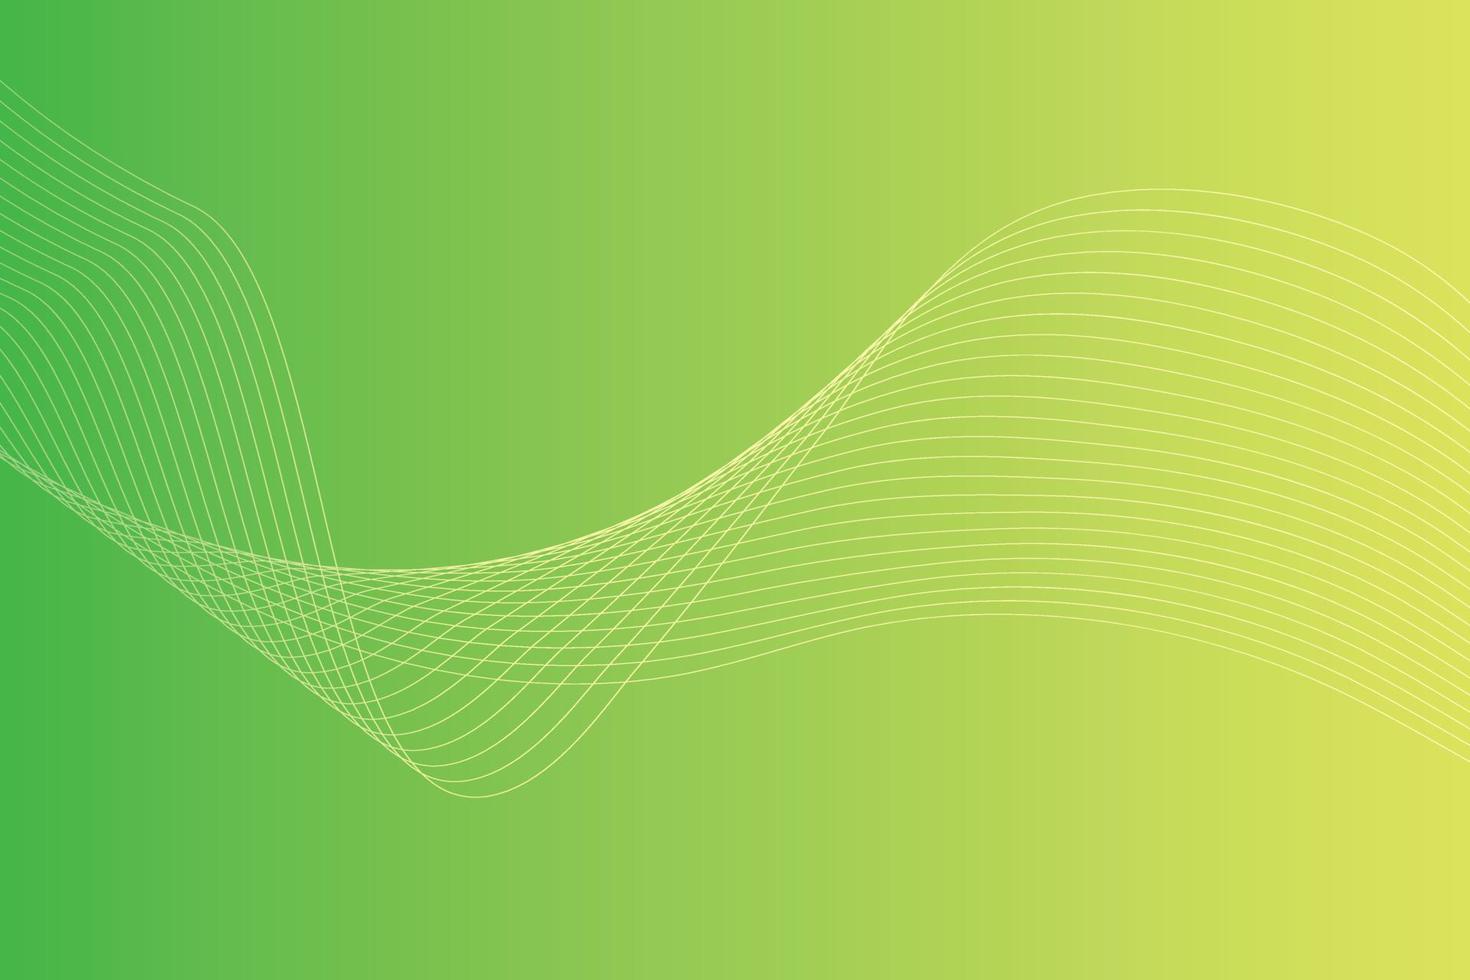 abstrato com linhas onduladas coloridas. design de fundo gradiente amarelo verde abstrato vetor